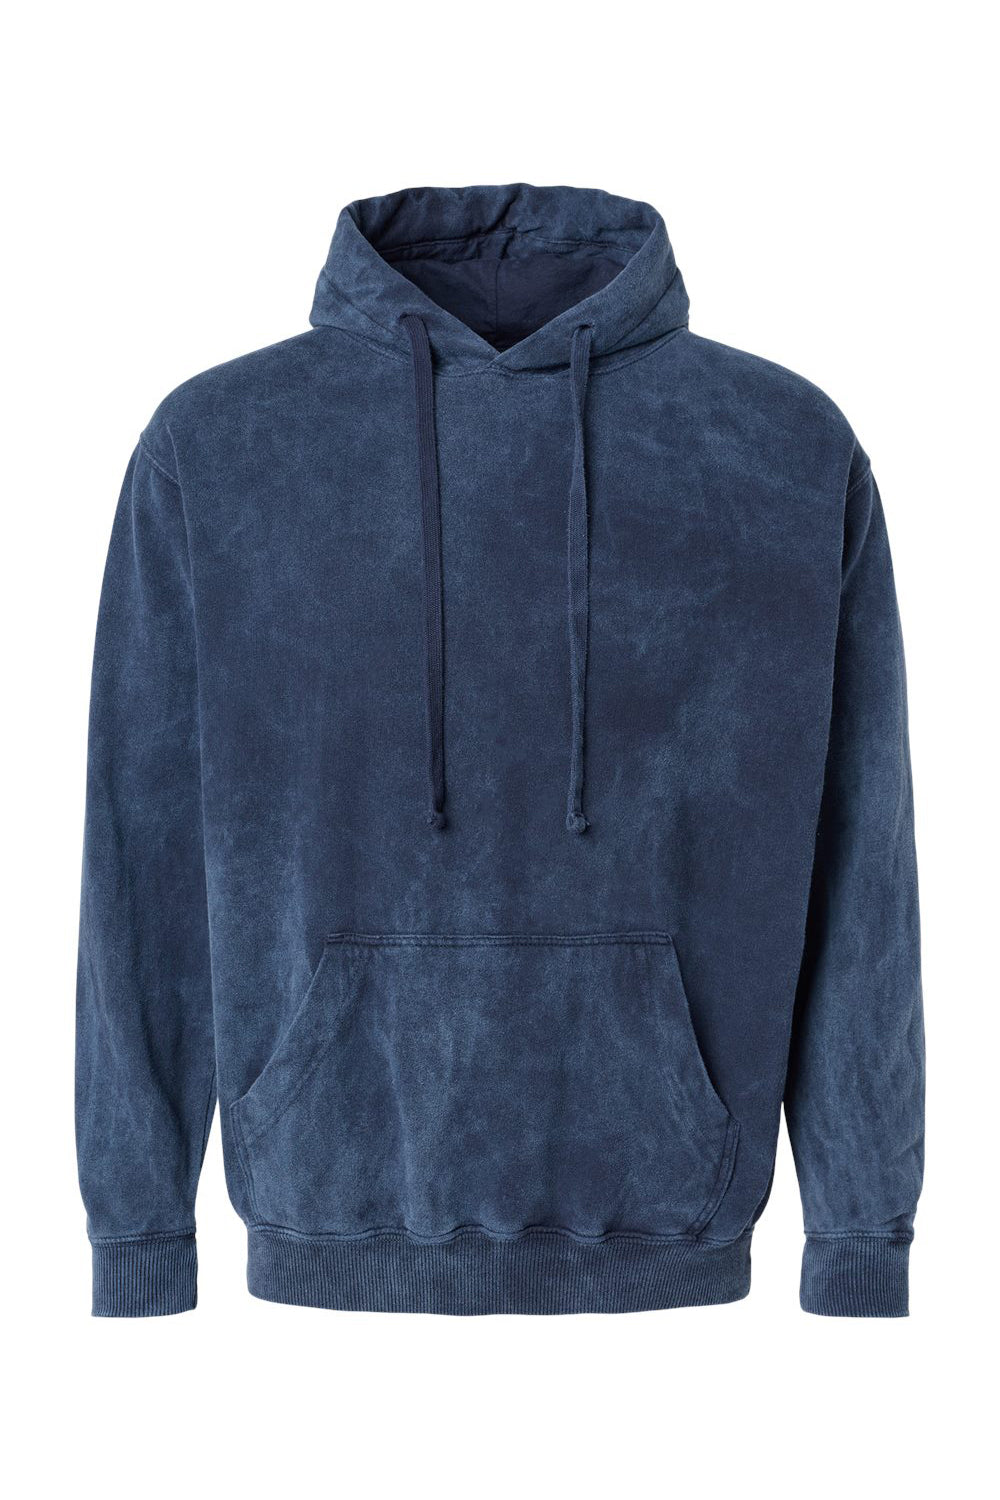 Dyenomite 854MW Mens Premium Fleece Mineral Wash Hooded Sweatshirt Hoodie Midnight Blue Flat Front